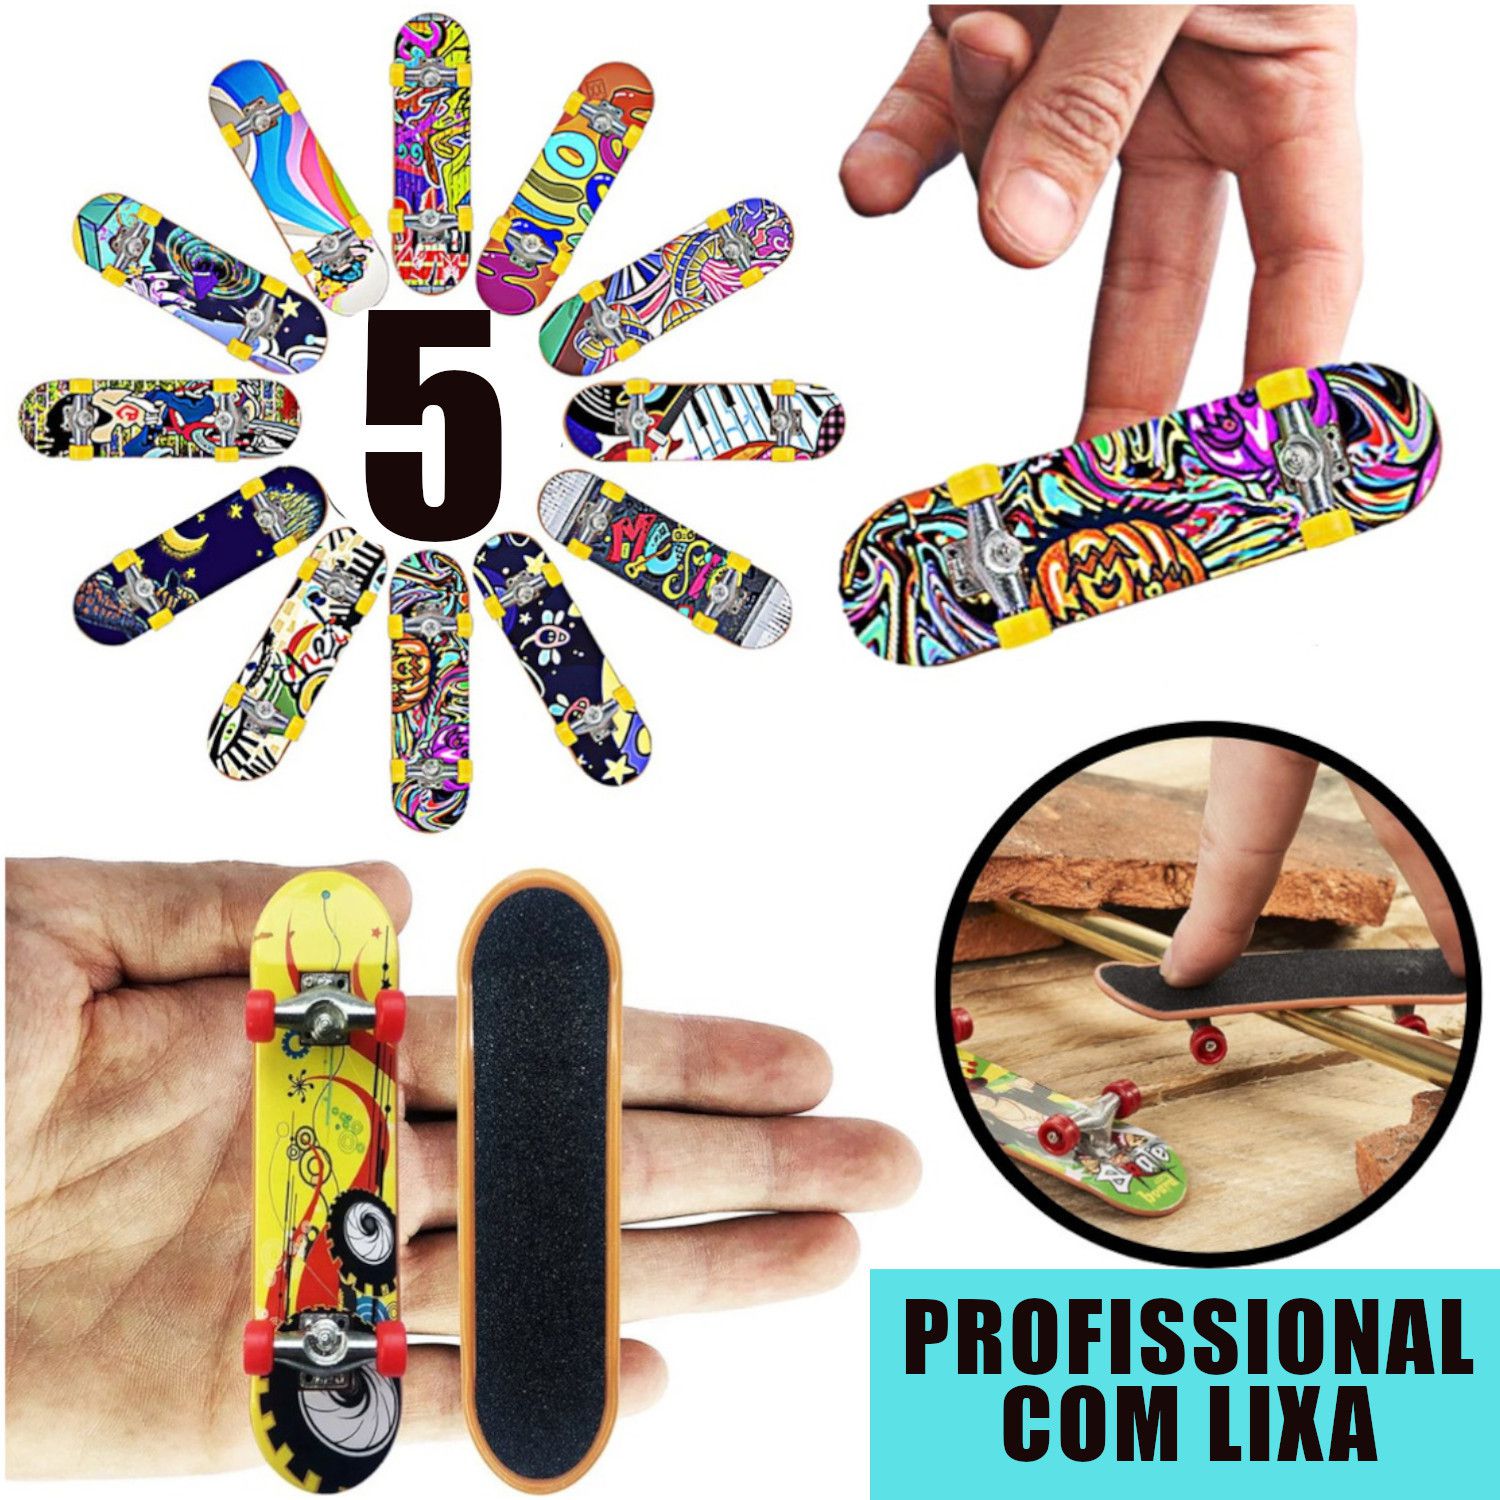 Skate de Dedo, Mini Skate, Skate de dedo com rampa, Skate Dedo